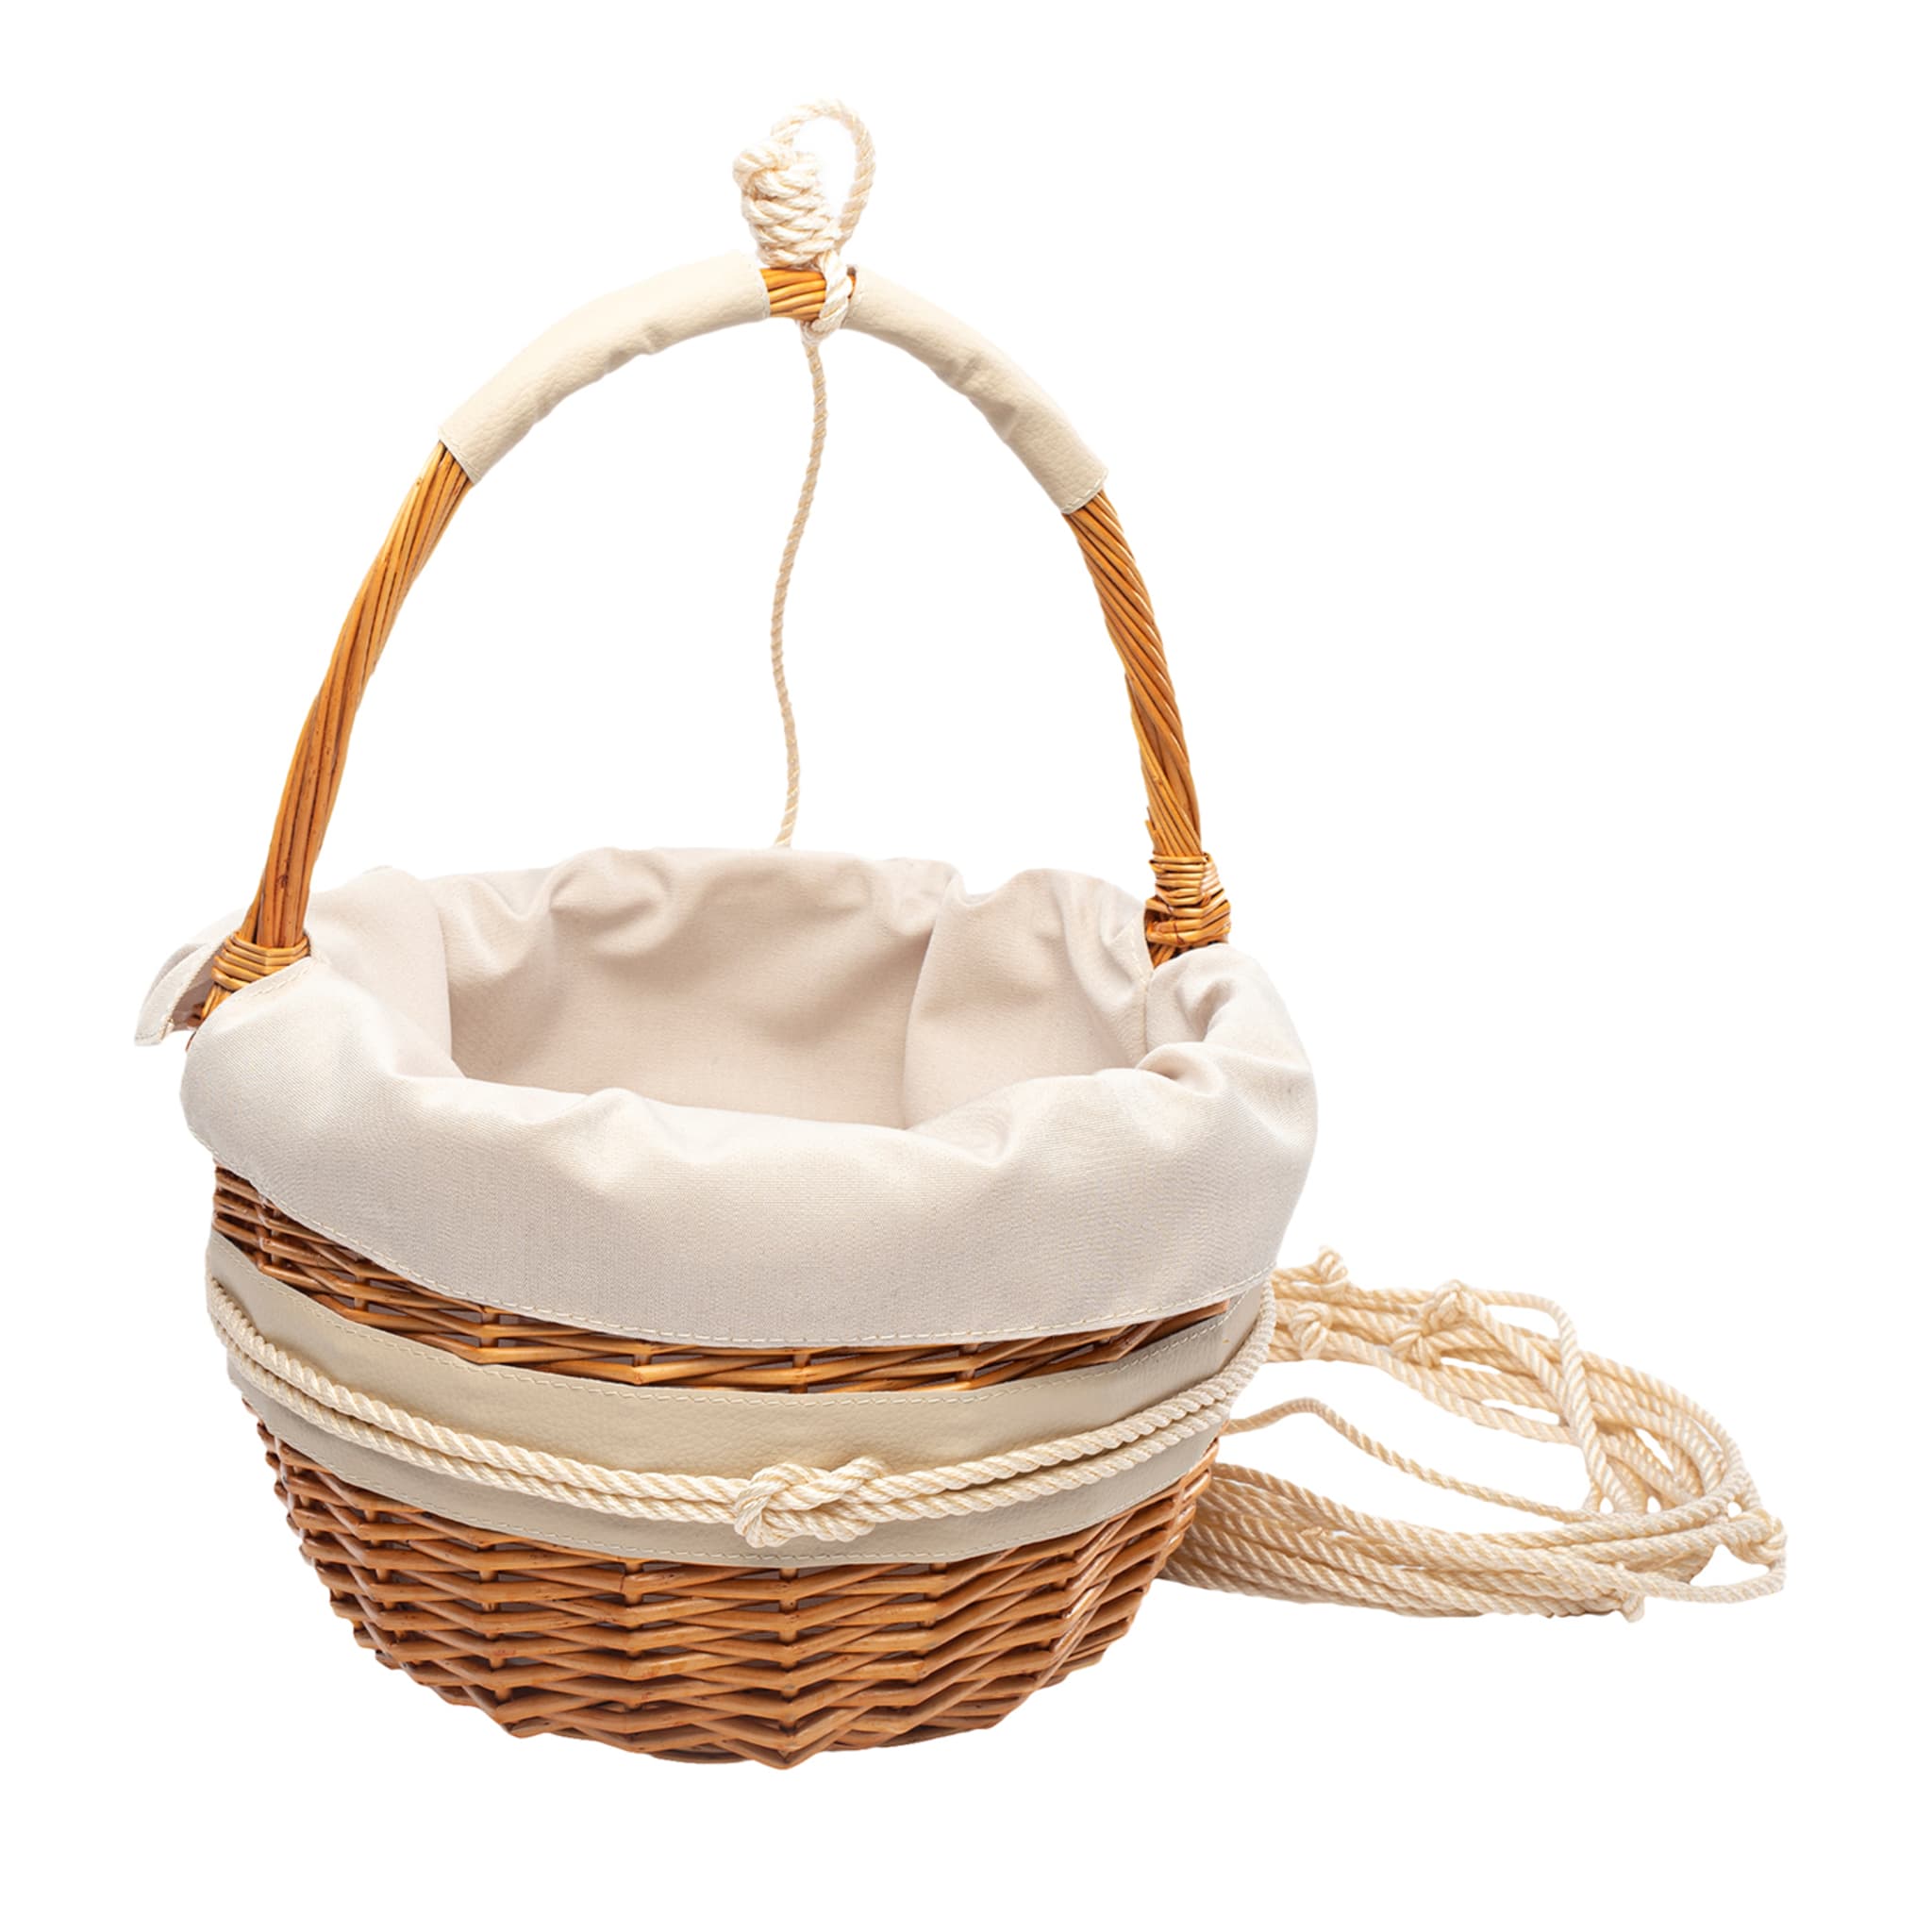 Chic Neapolitan-Style Cream Wicker Basket - Main view